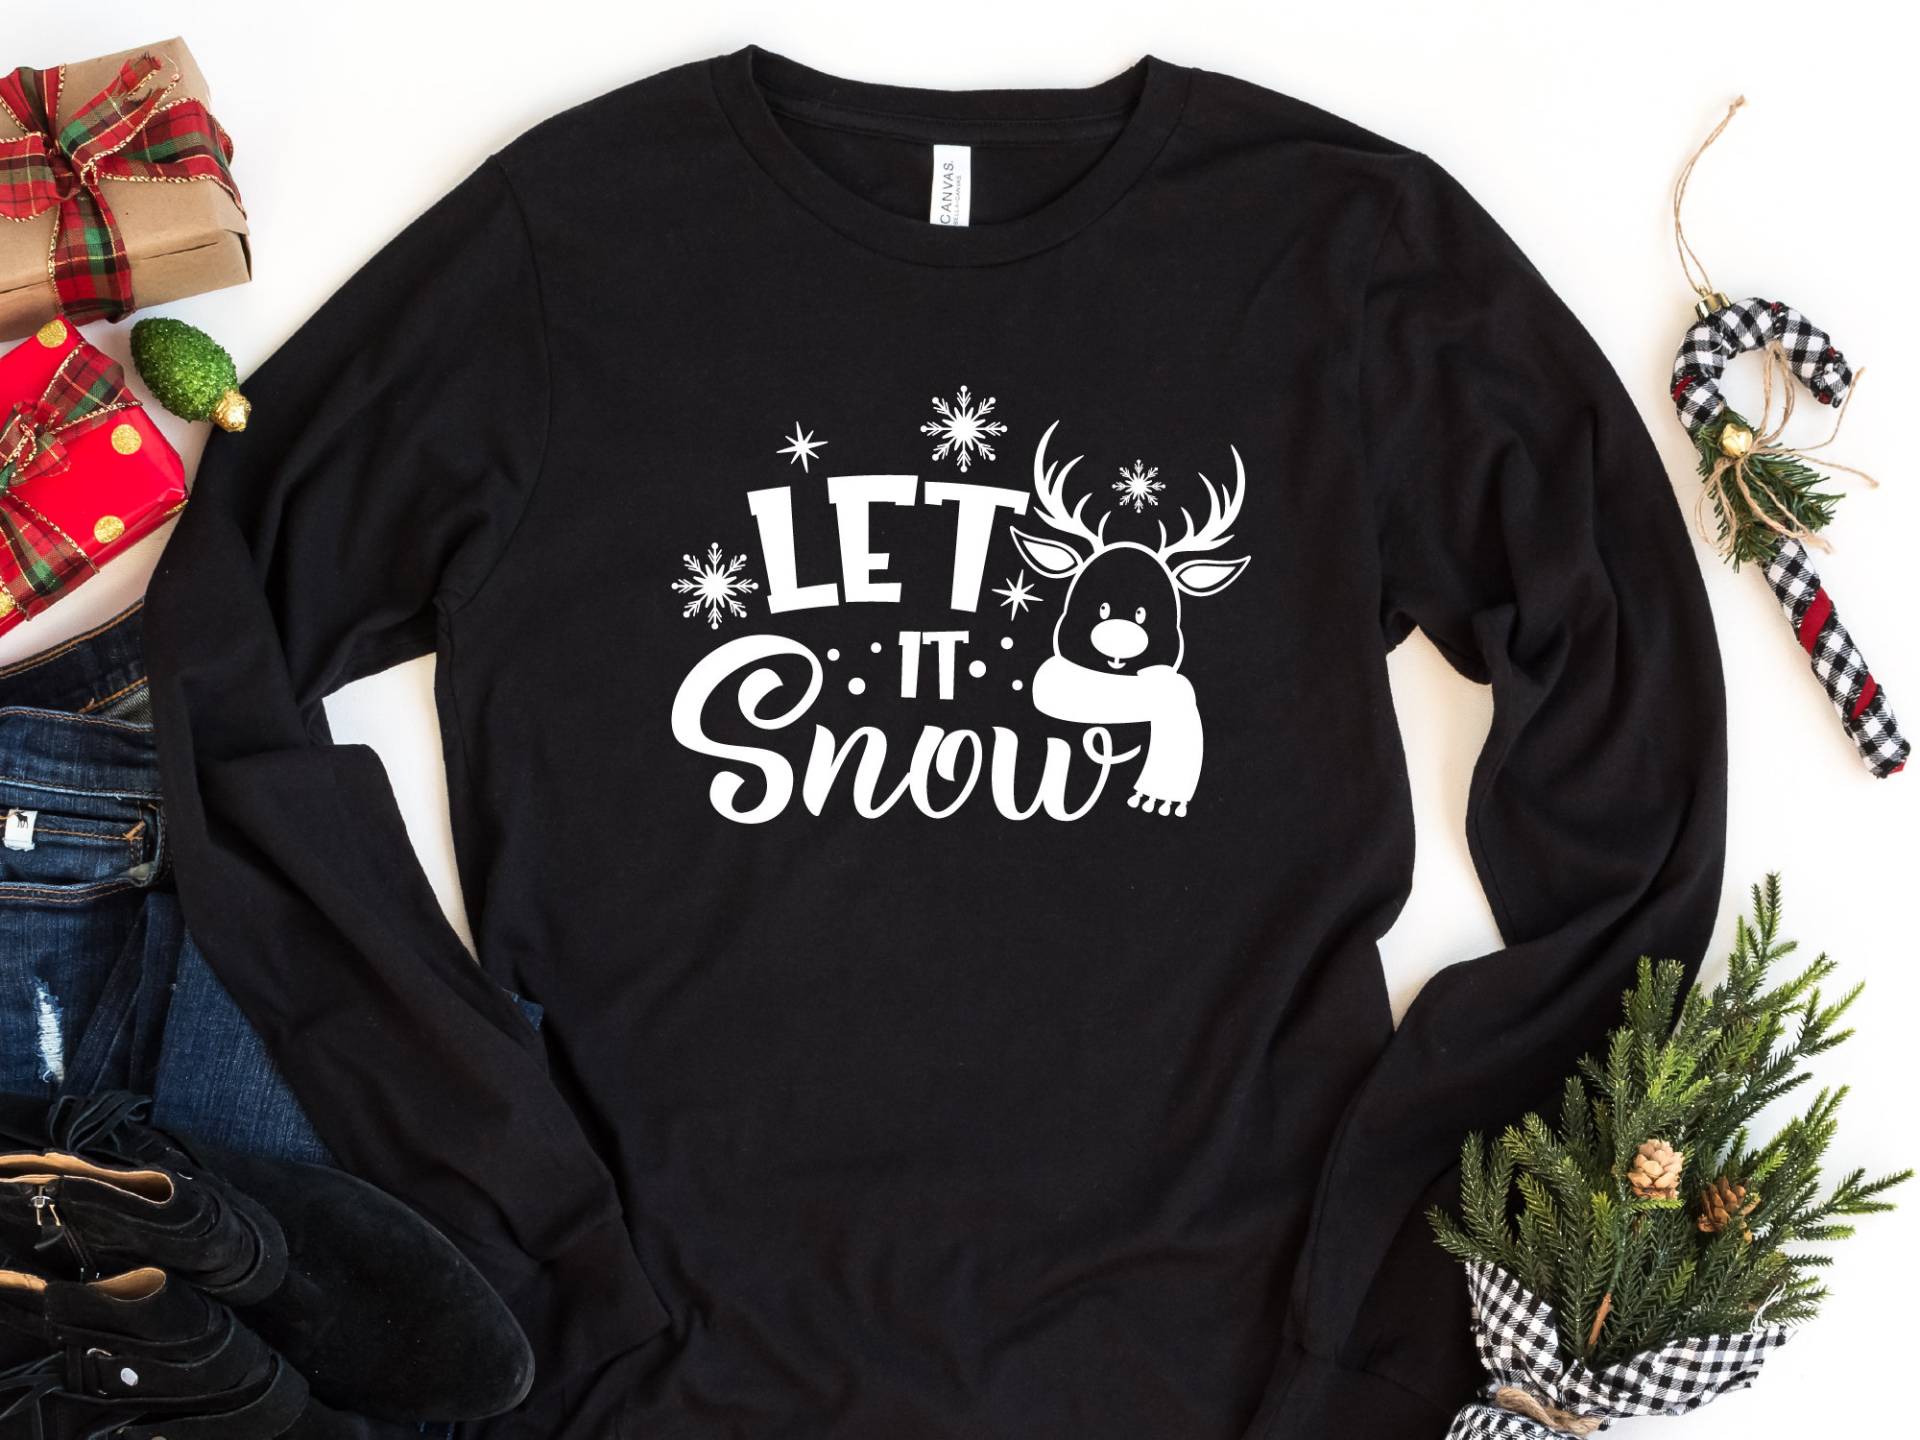 Let It Snow Langarm-Weihnachts-T-Shirt, Weihnachtshemd, Frohe Weihnachten, Weihnachtsgeschenk, Schnee, Winterhemd, Schneemannhemd, Schneeflocke von craftgatedesign